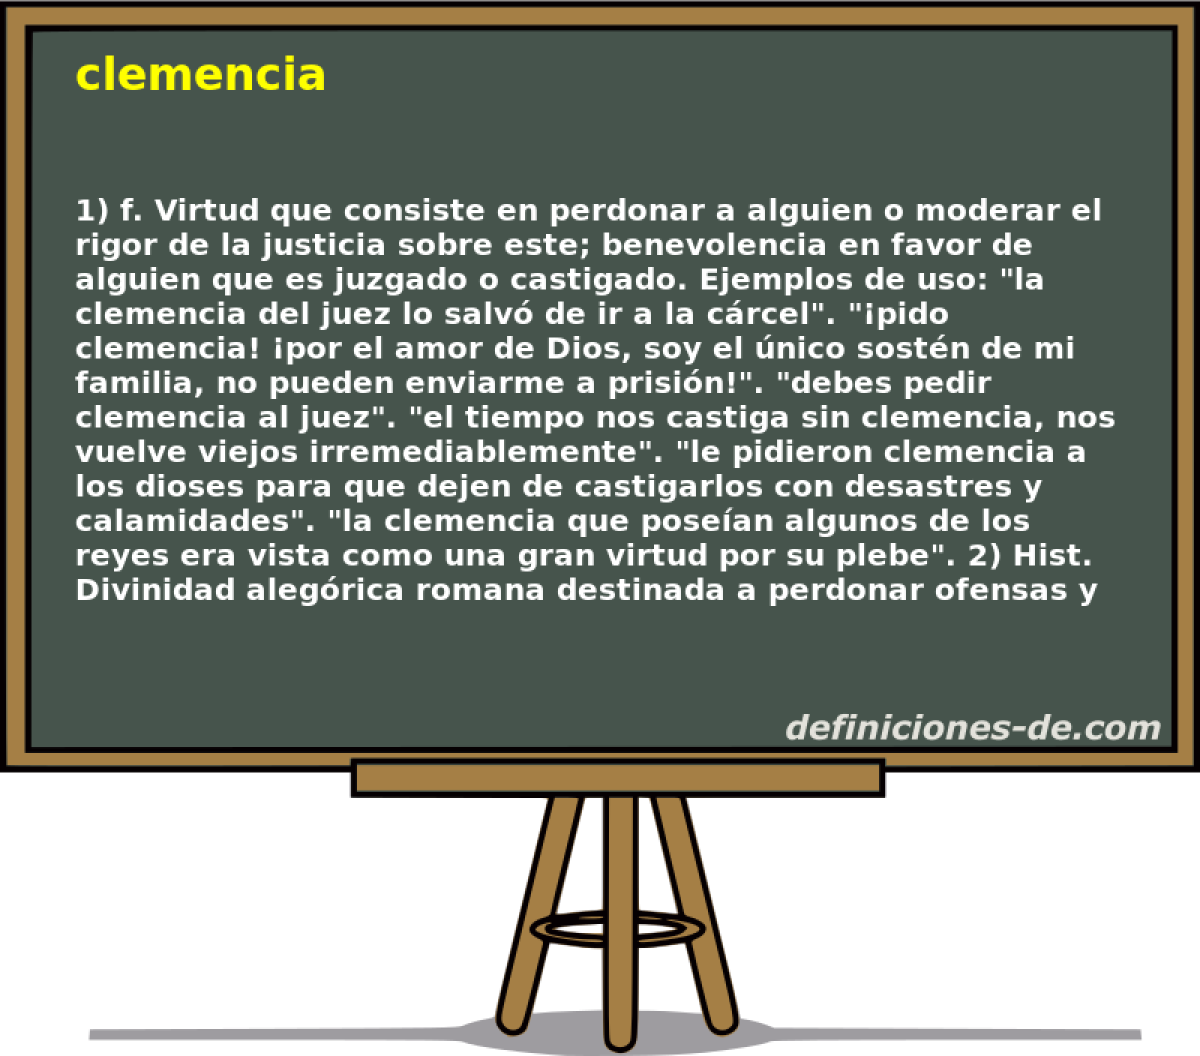 clemencia 